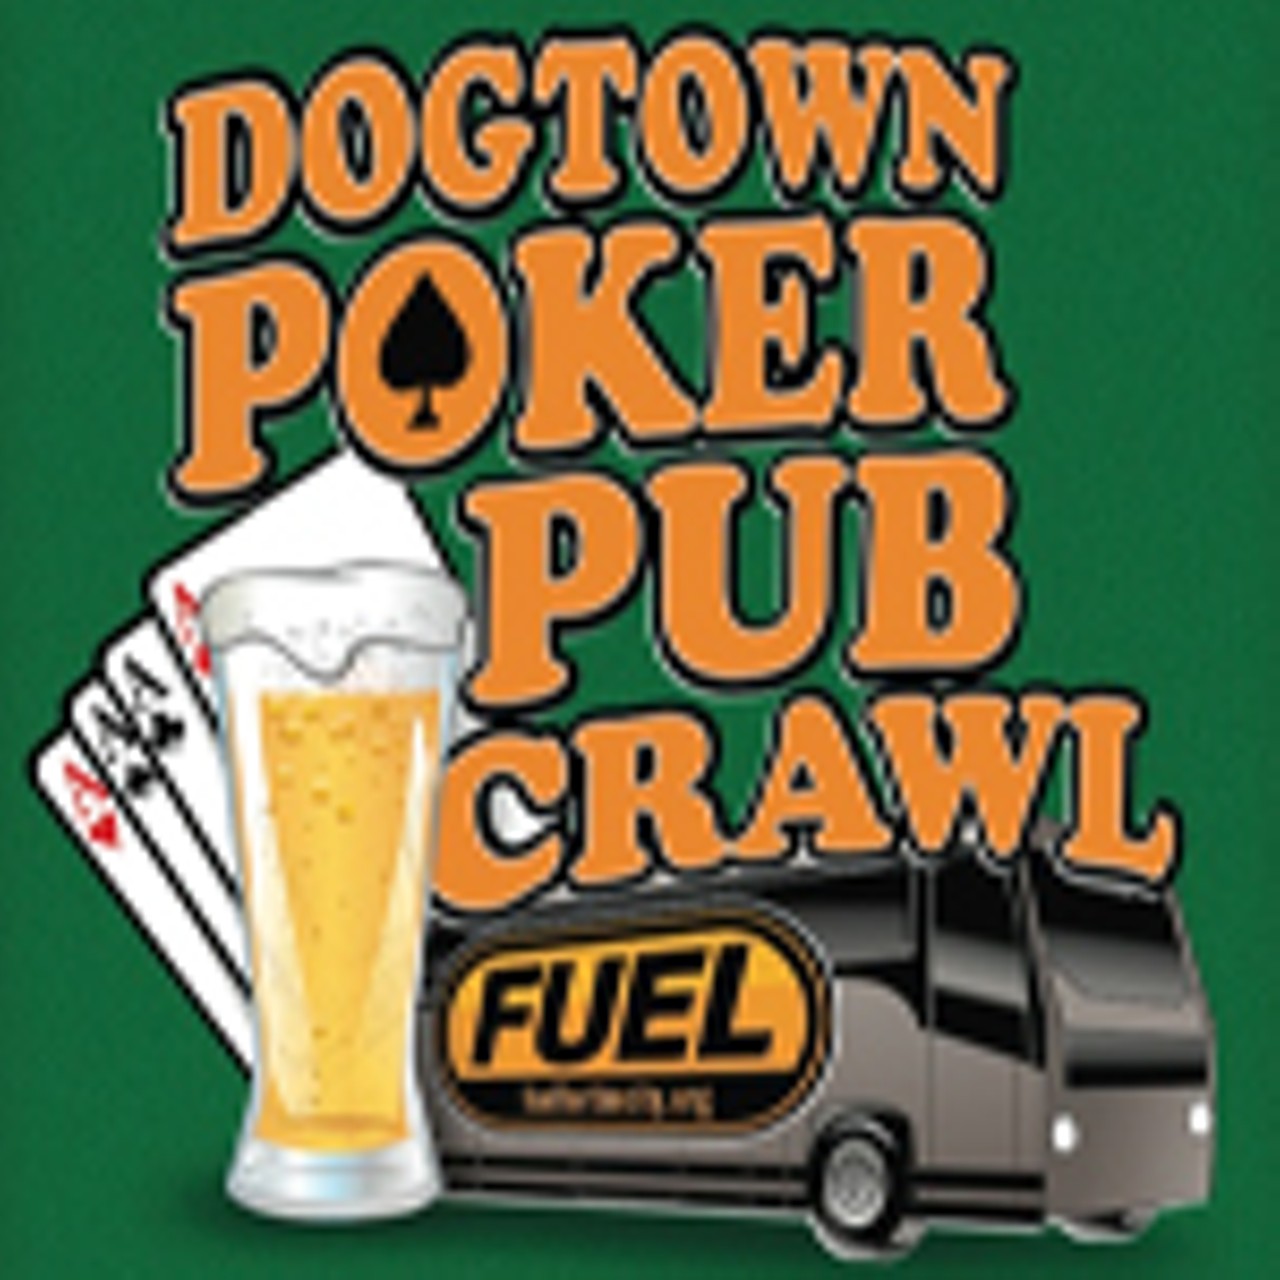 Dogtown Poker Pub Crawl